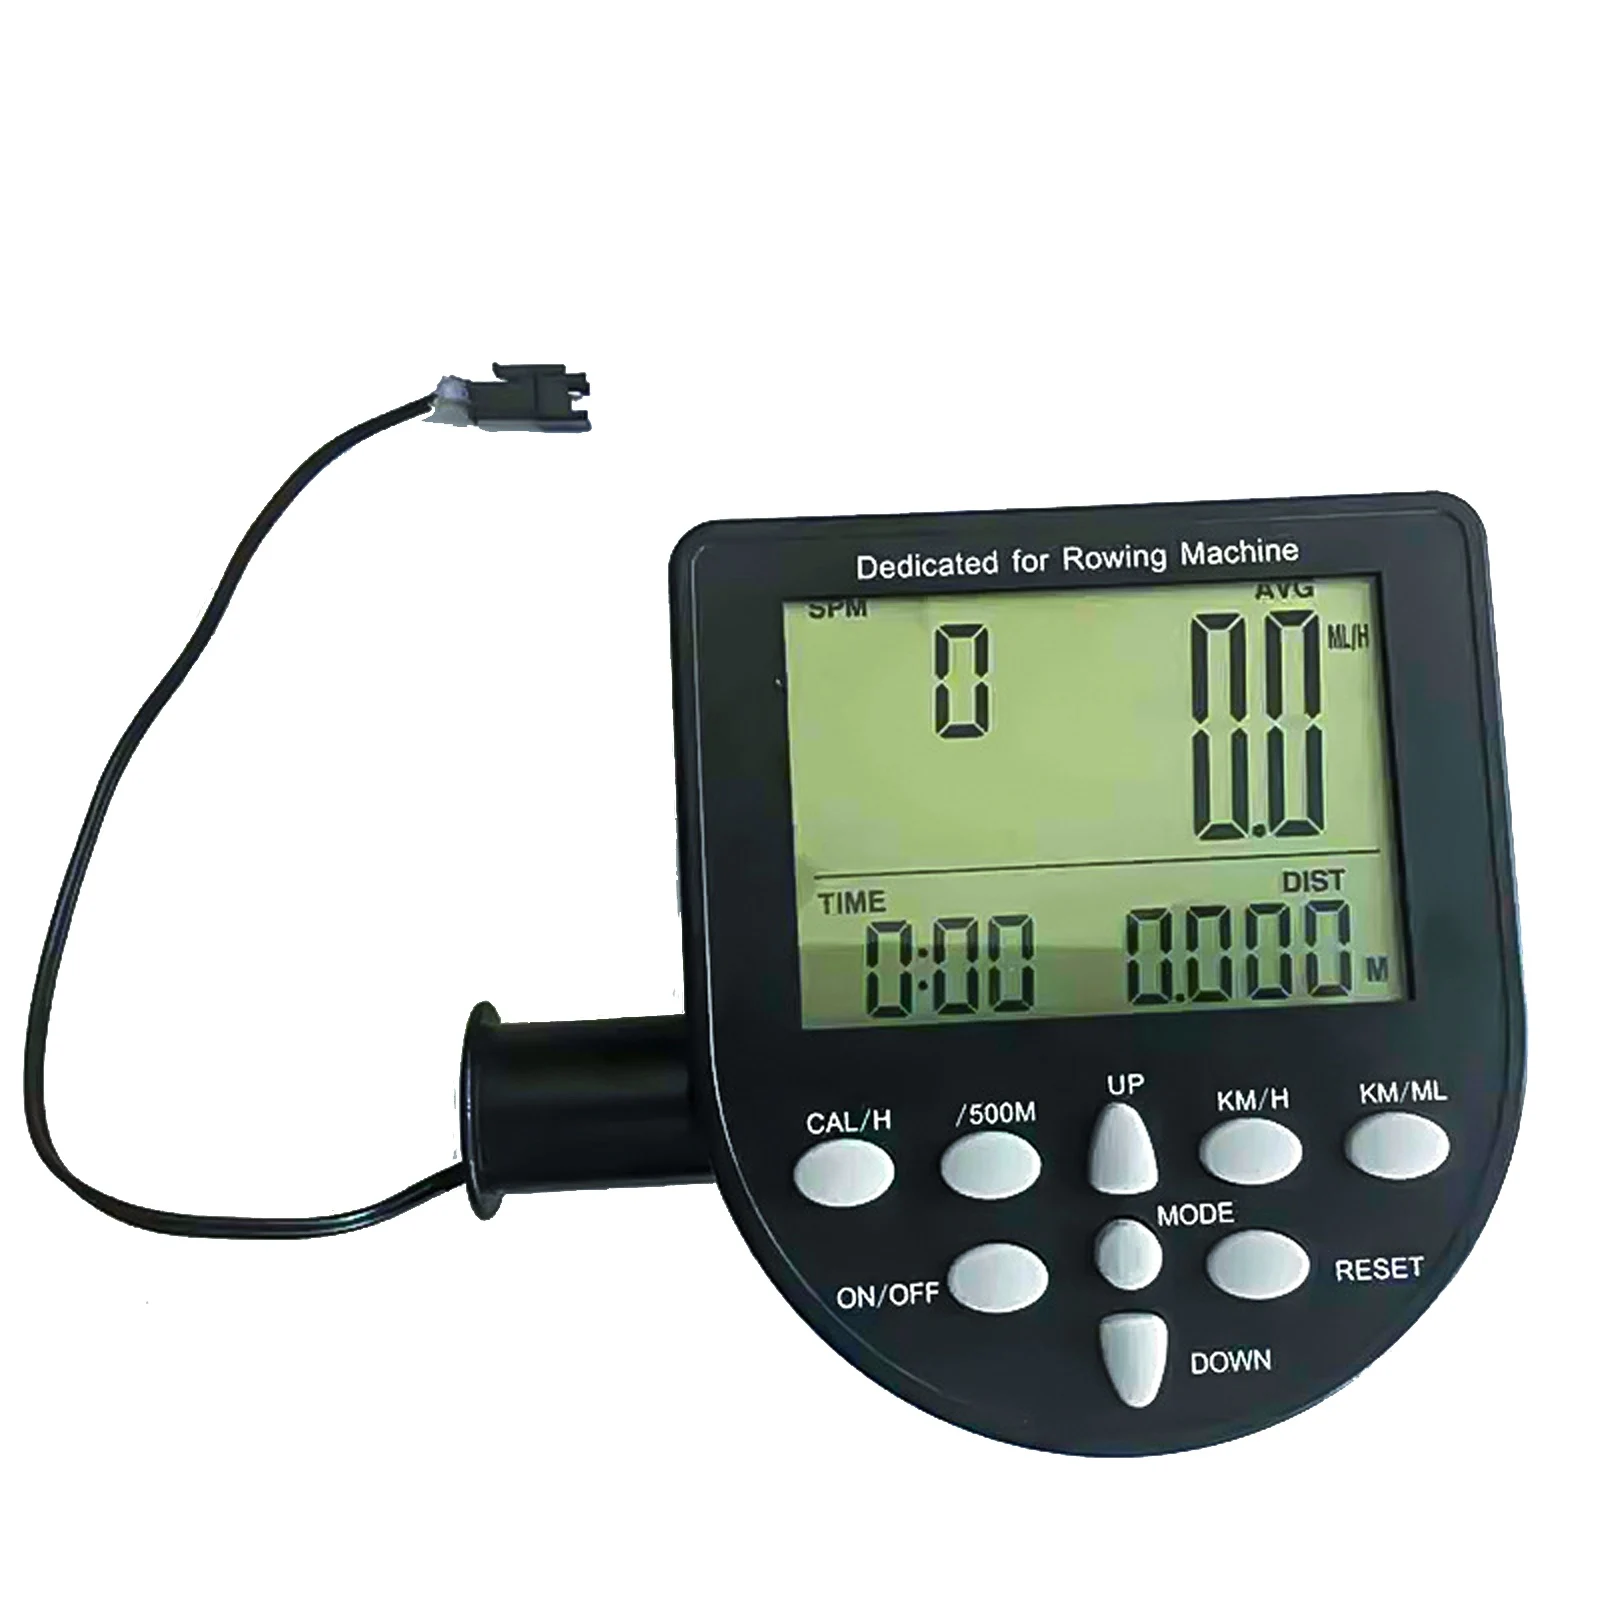 

Гребной телефон Bluetooth APP электронные часы для магниторезистивного гребного Устройства фитнес оборудование монитор экран